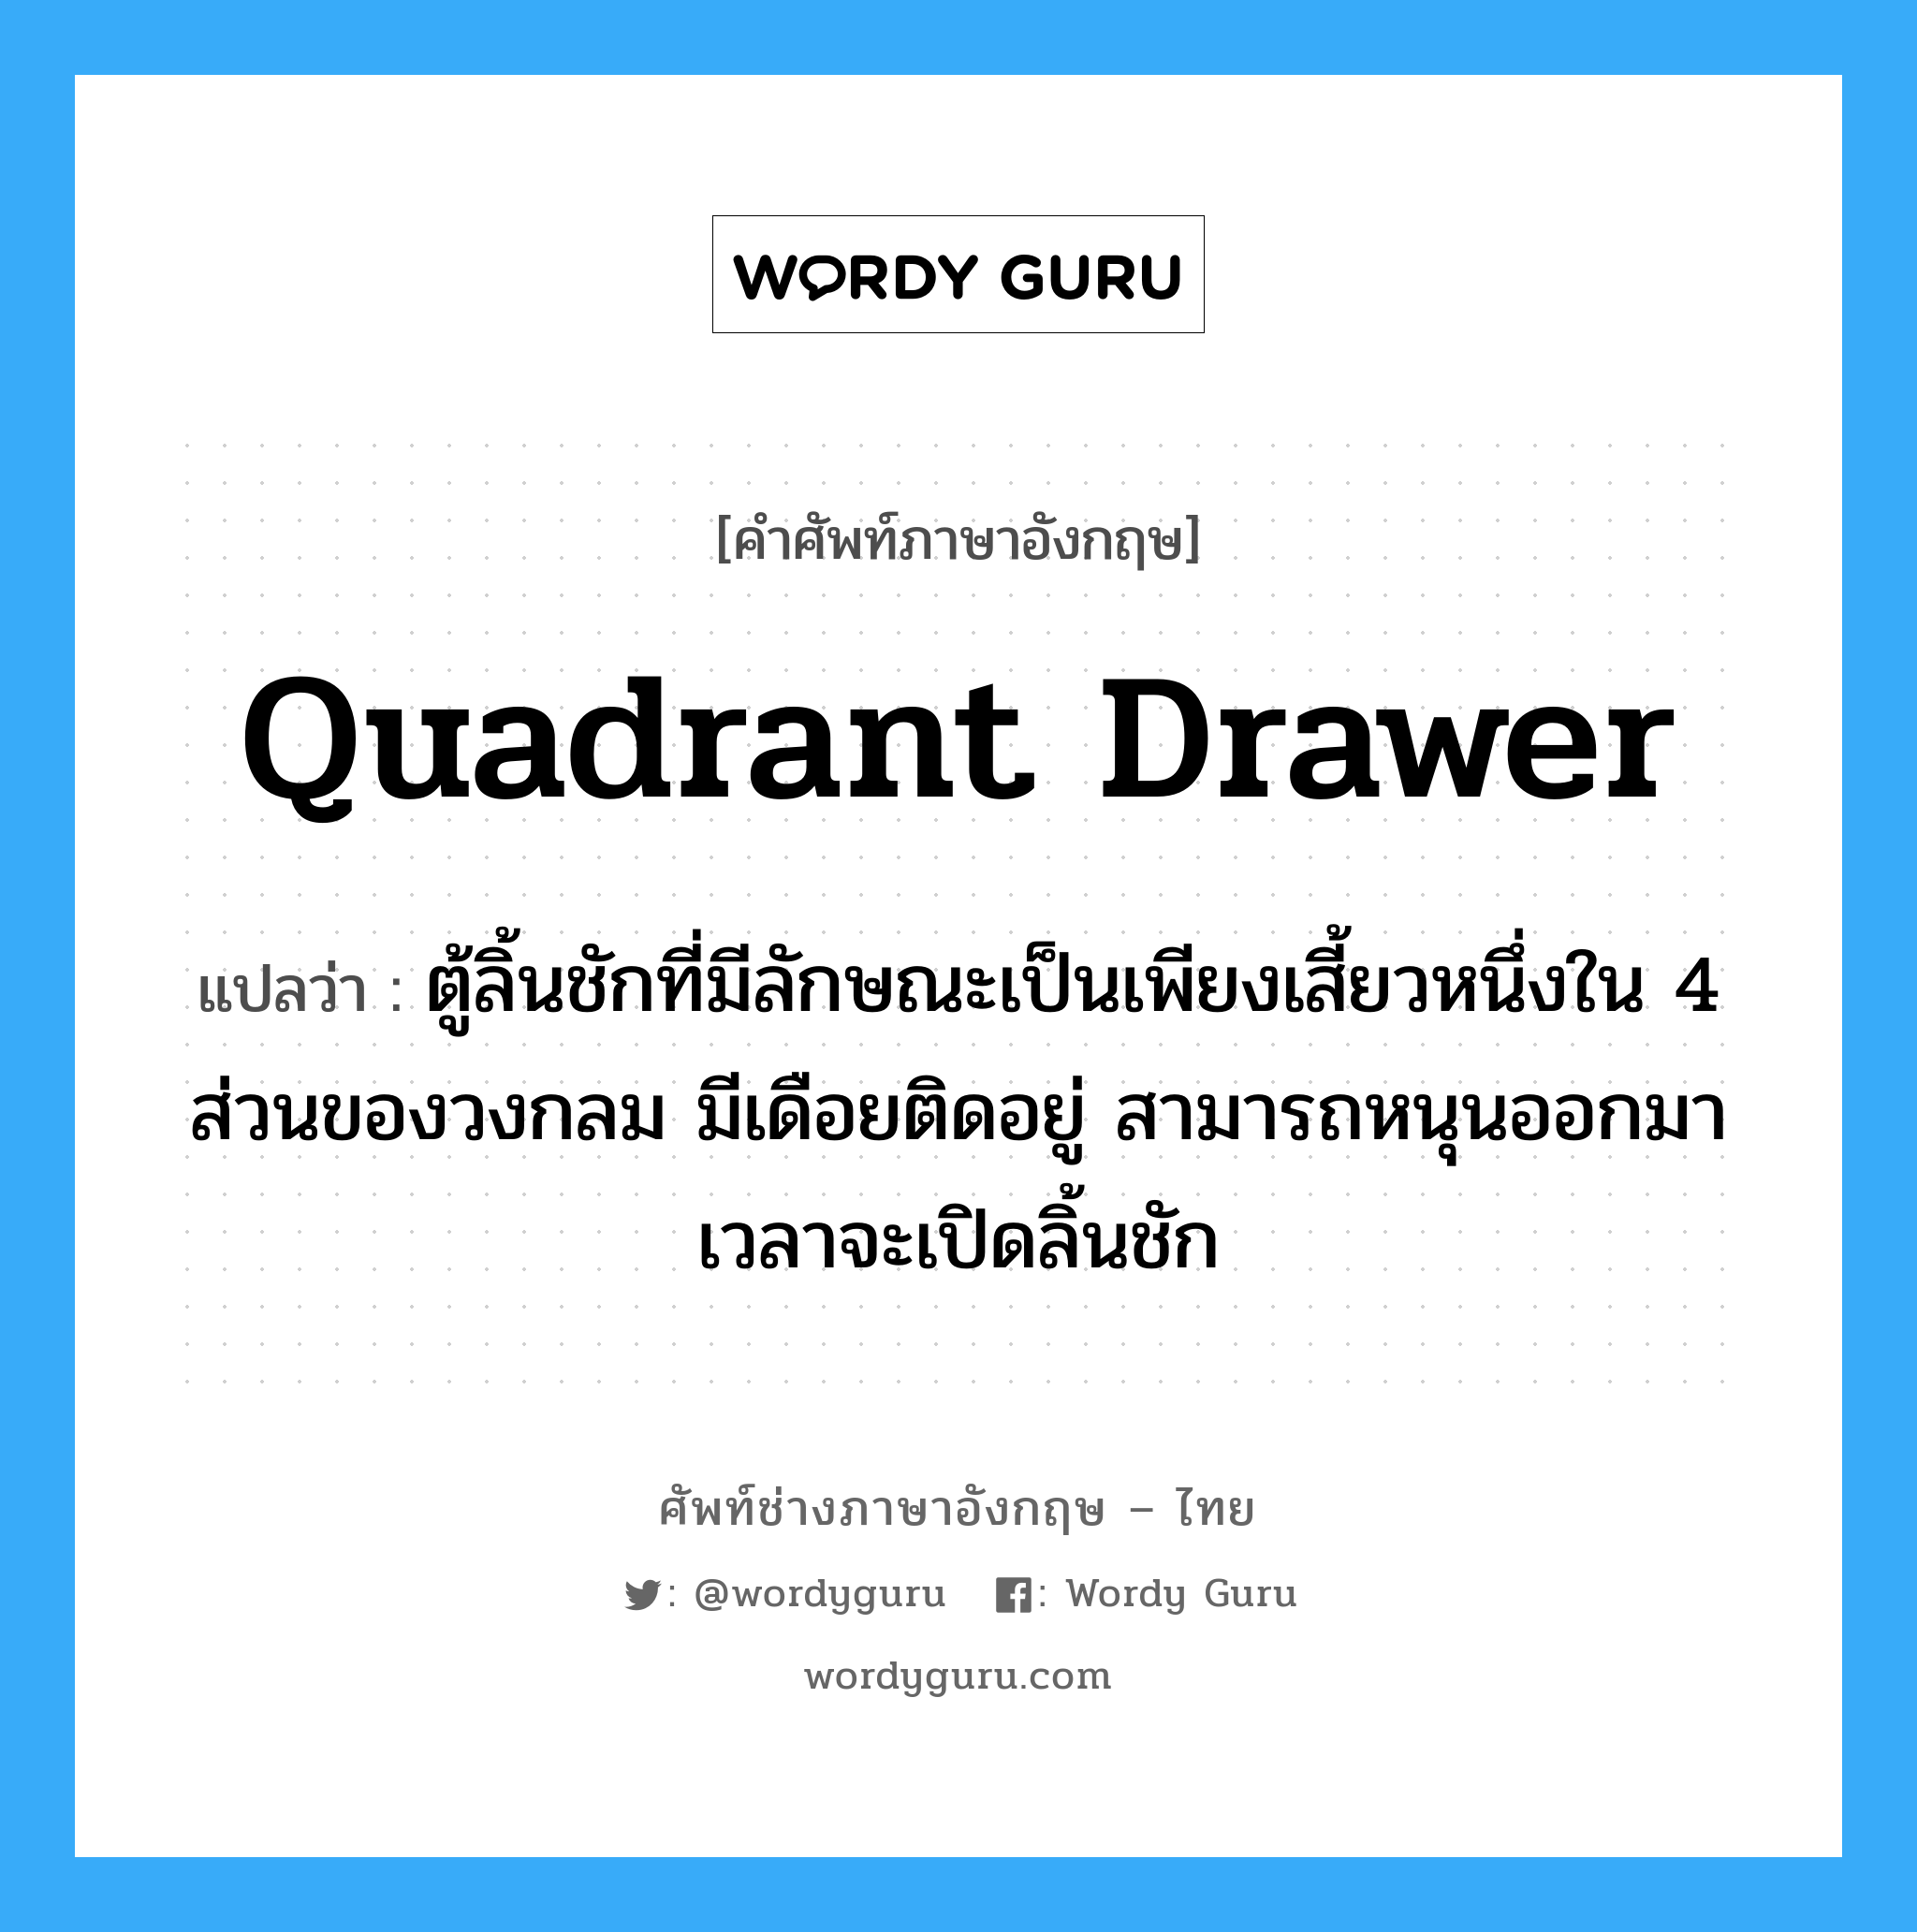 quadrant drawer แปลว่า?, คำศัพท์ช่างภาษาอังกฤษ - ไทย quadrant drawer คำศัพท์ภาษาอังกฤษ quadrant drawer แปลว่า ตู้ลิ้นชักที่มีลักษณะเป็นเพียงเสี้ยวหนึ่งใน 4 ส่วนของวงกลม มีเดือยติดอยู่ สามารถหนุนออกมาเวลาจะเปิดลิ้นชัก